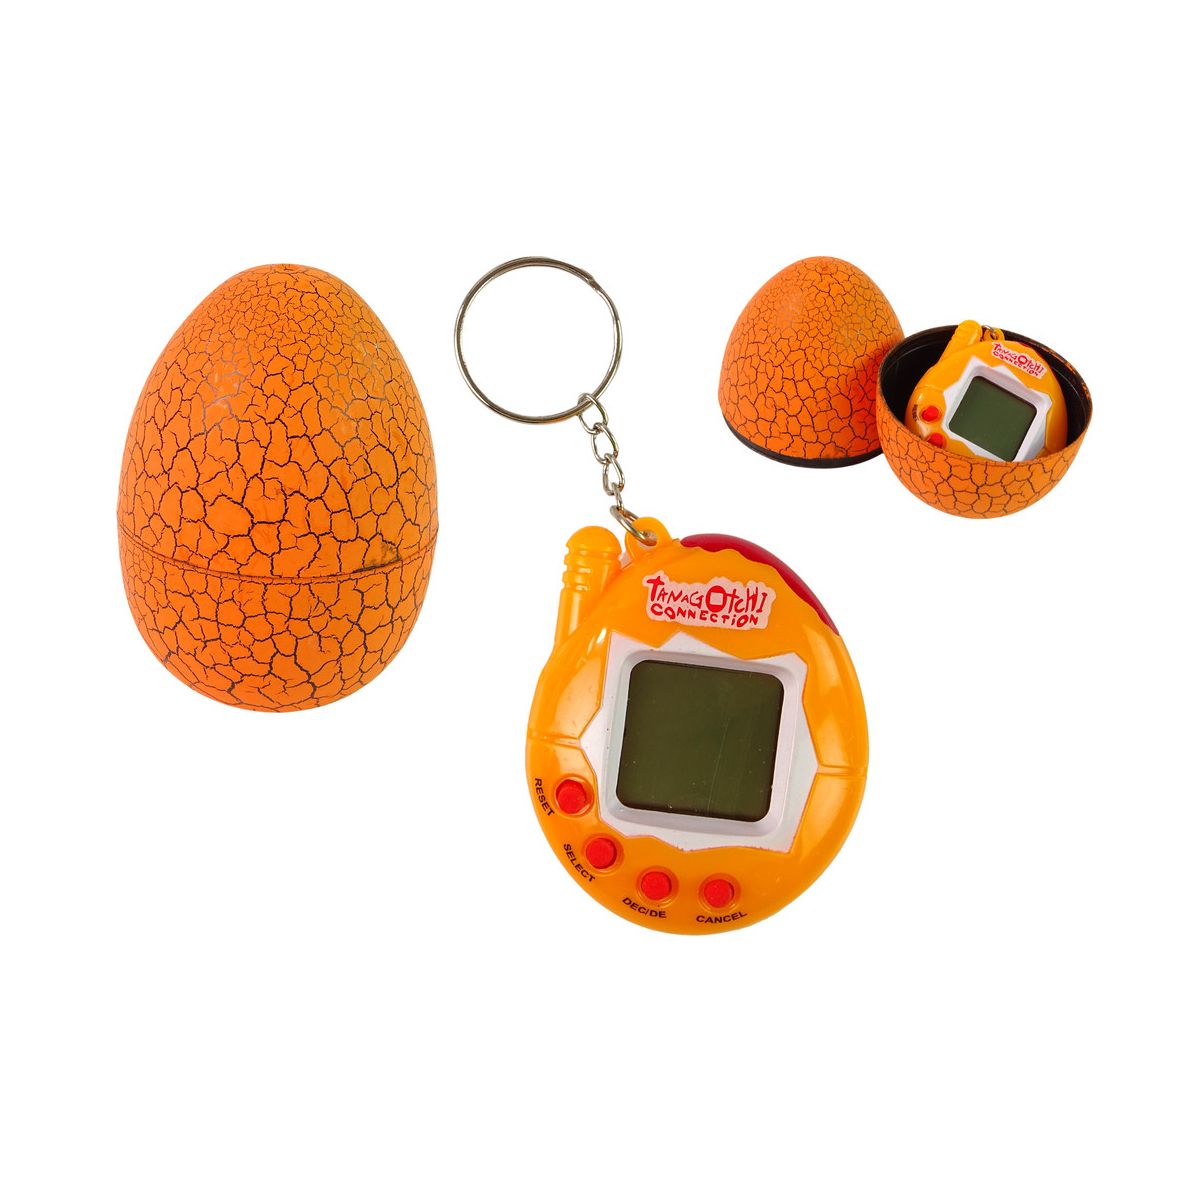 Gra elektroniczna Lean Tamagotchi w Jajku Gra Elektroniczne Zwierzątko Pomarańczowe (13409)